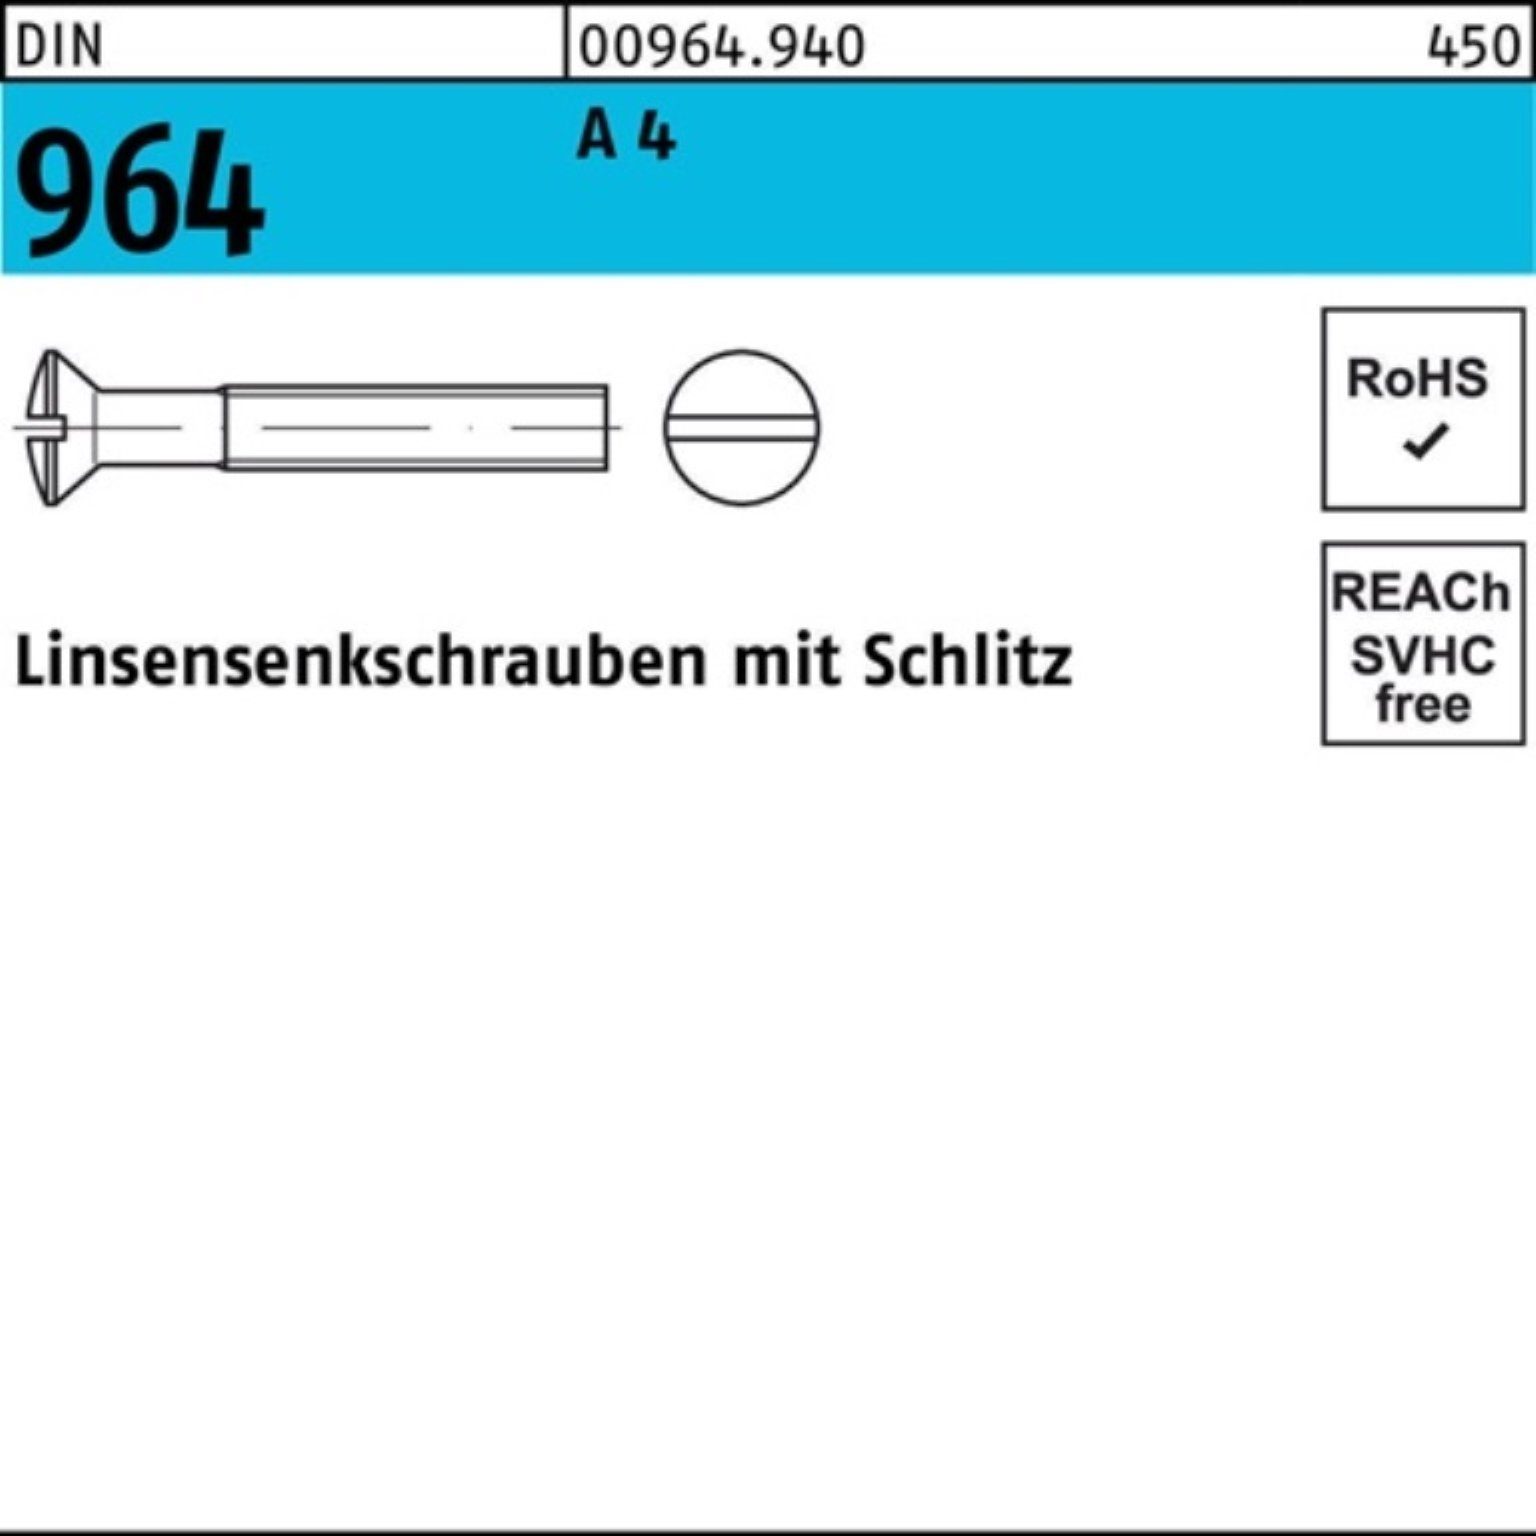 A 200er DIN 200 Linsenschraube M2,5x Reyher Stück Schlitz Pack 964 4 Linsensenkschraube 20